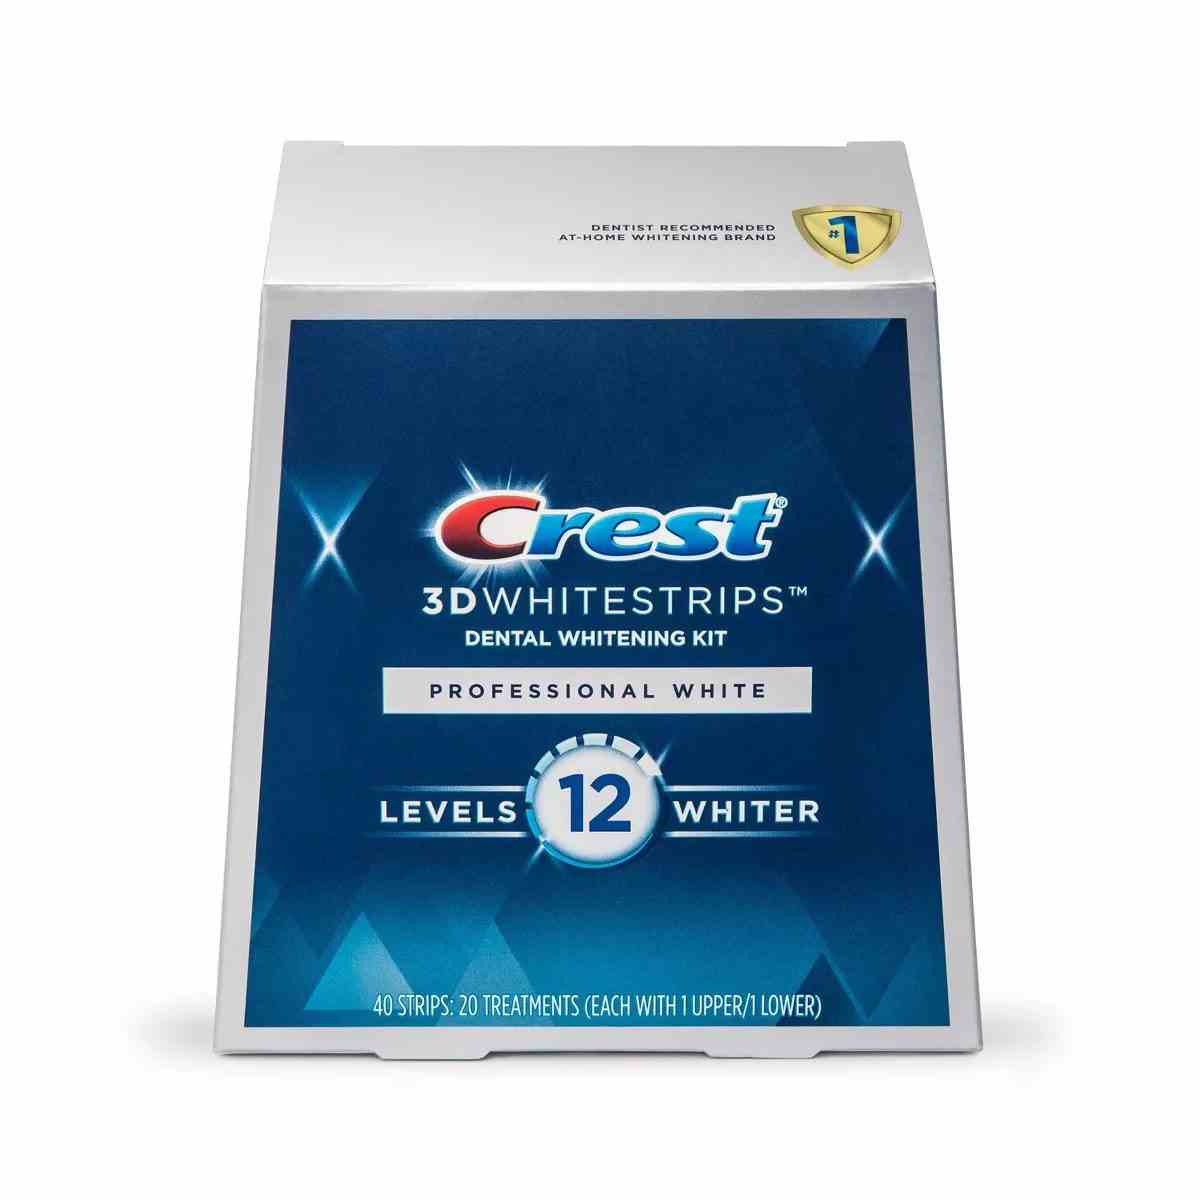 Crest 3D Whitestrips Professional White Teeth Whitening Kit Blue Box auf weißem Hintergrund